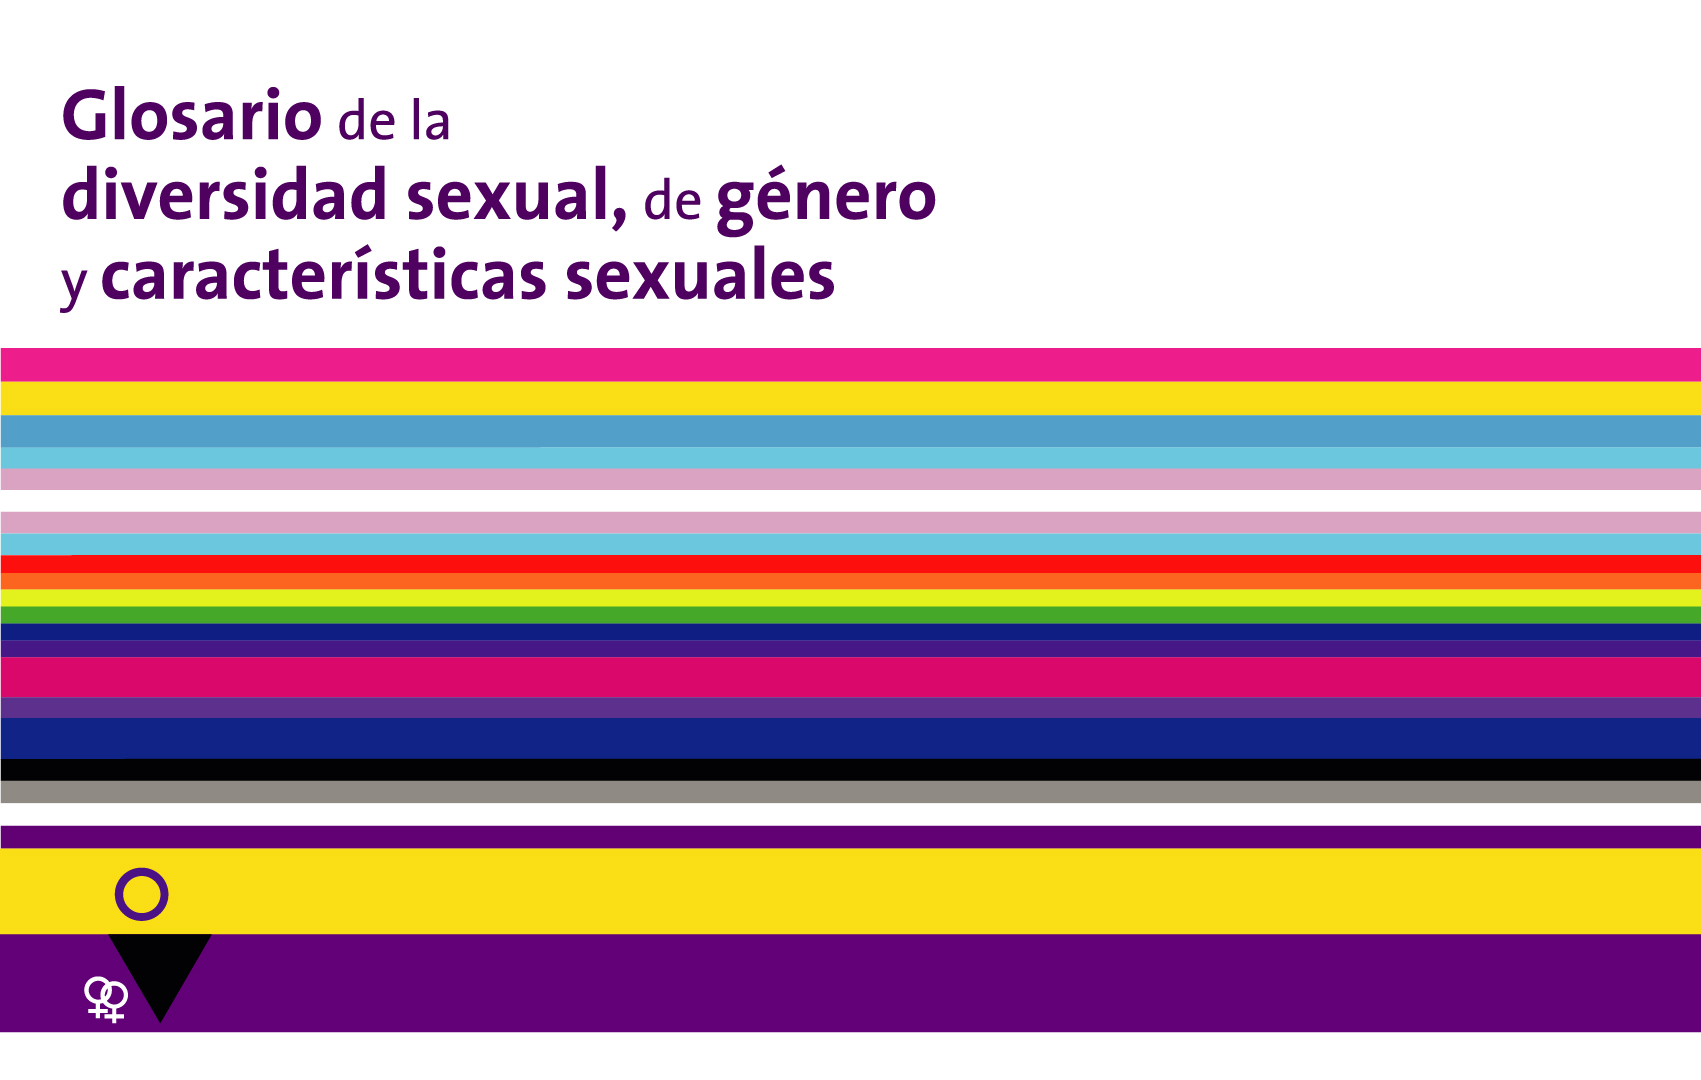 Banner del "Glosario de la diversidad sexual, de género y características sexuales"